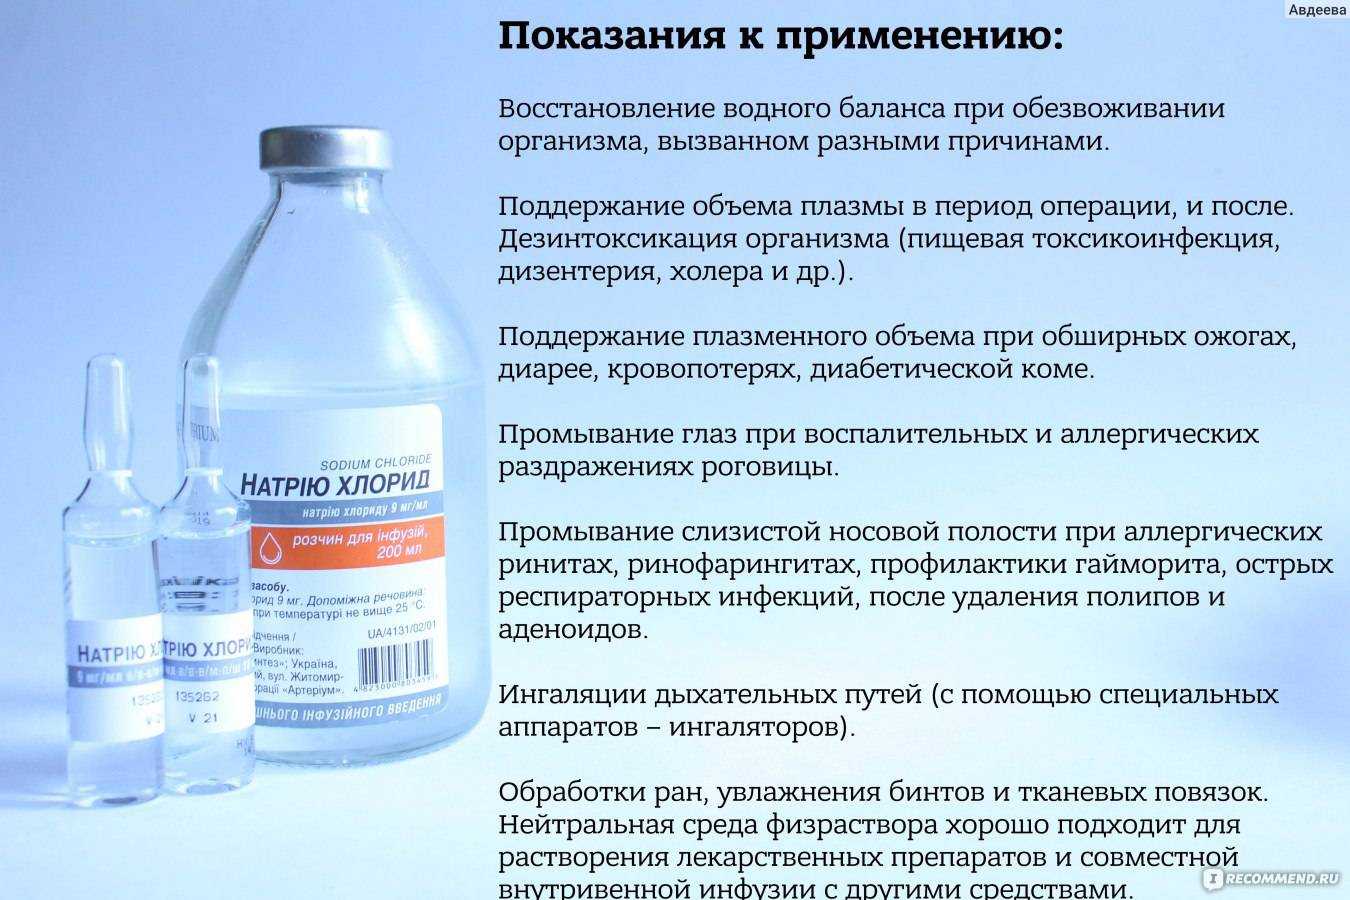 Диоксидин - инструкция по применению